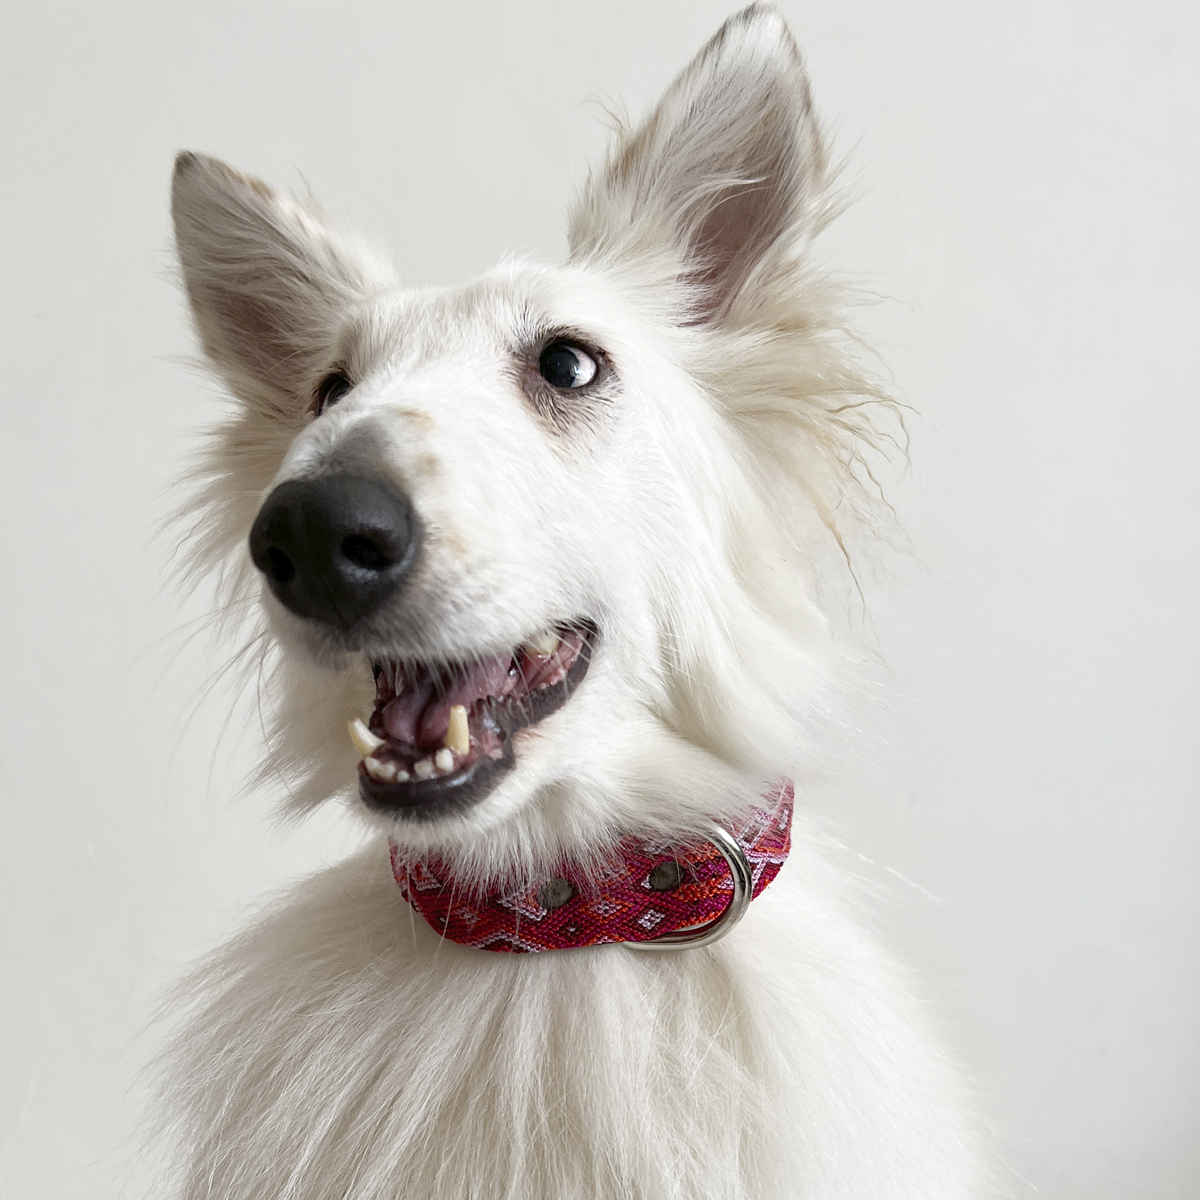 B&Kolor Collar de Piel Ancho Diseño Tejido Artesanal Color Rosa con Hebilla para Perro, Mediano